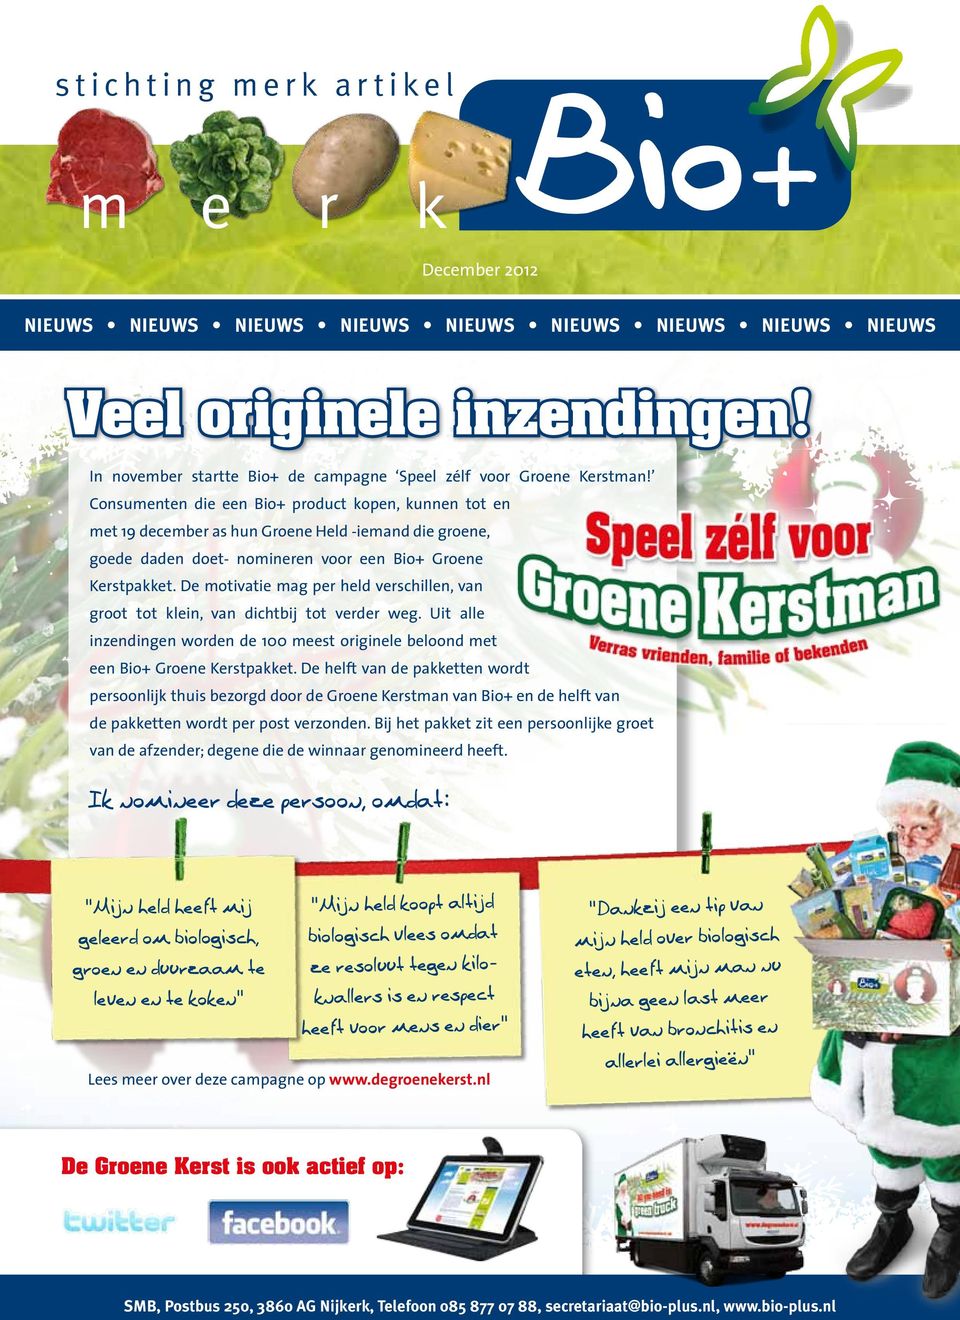 Consumenten die een Bio+ product kopen, kunnen tot en met 19 december as hun Groene Held -iemand die groene, goede daden doet- nomineren voor een Bio+ Groene Kerstpakket.